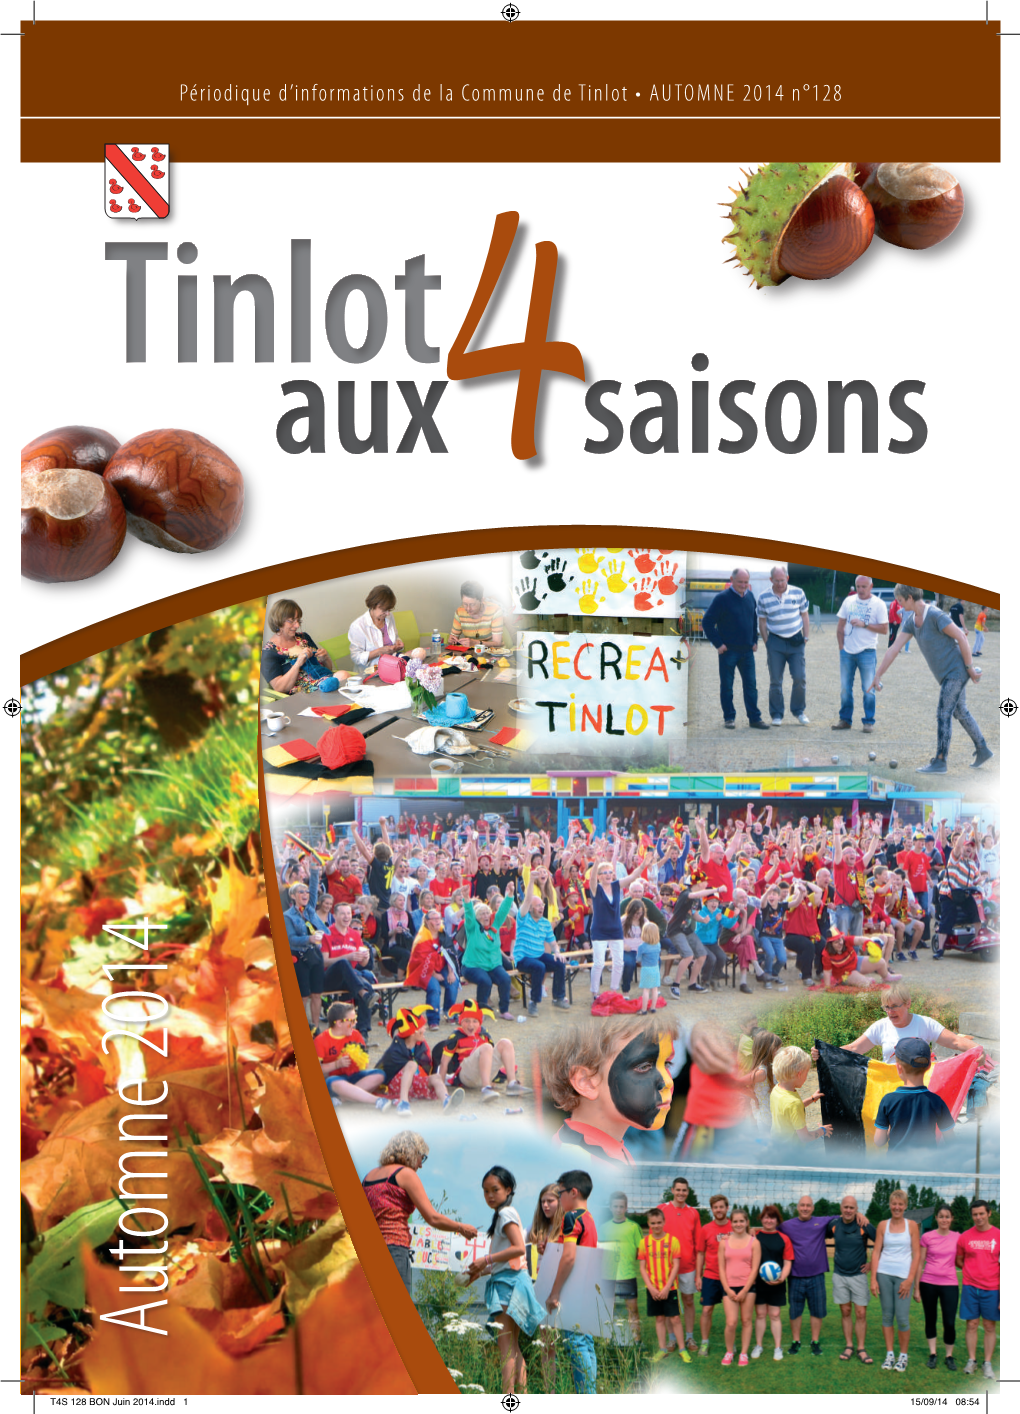 Automne 2014 N°128 Tinlot Aux4saisons Automne 2014 Automne